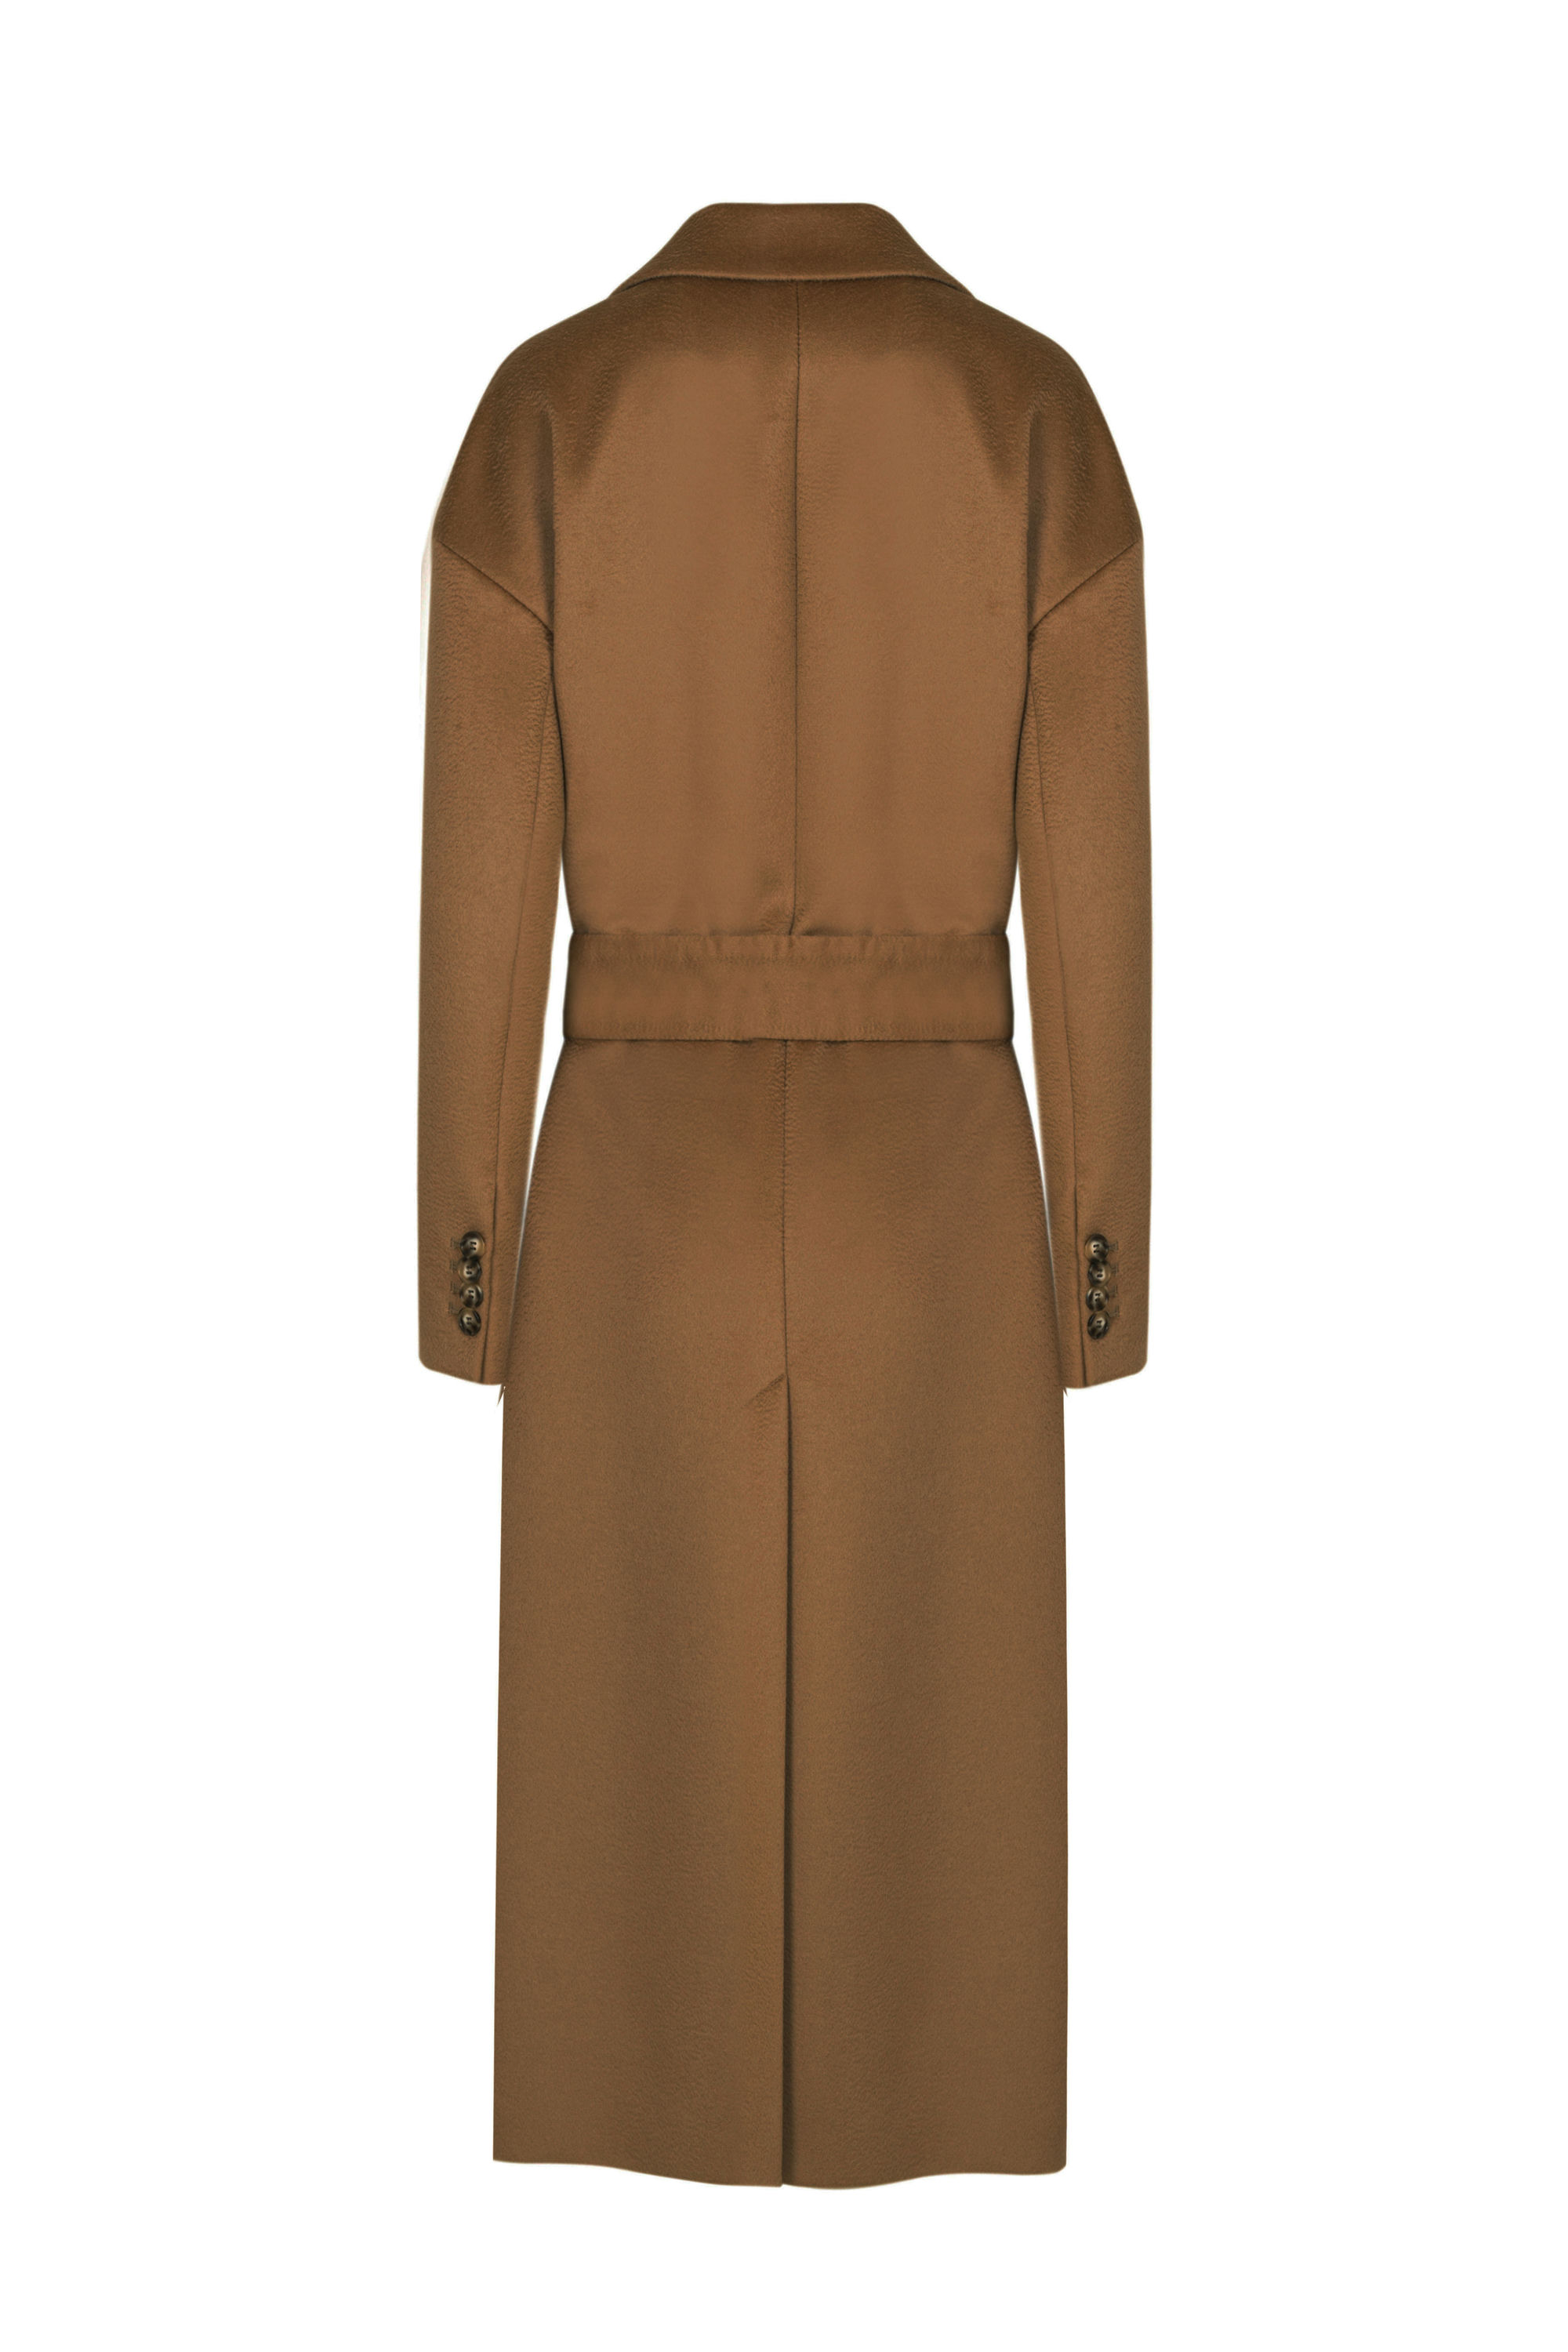 Пальто женское демисезонное 1-13140-1. Фото 6.